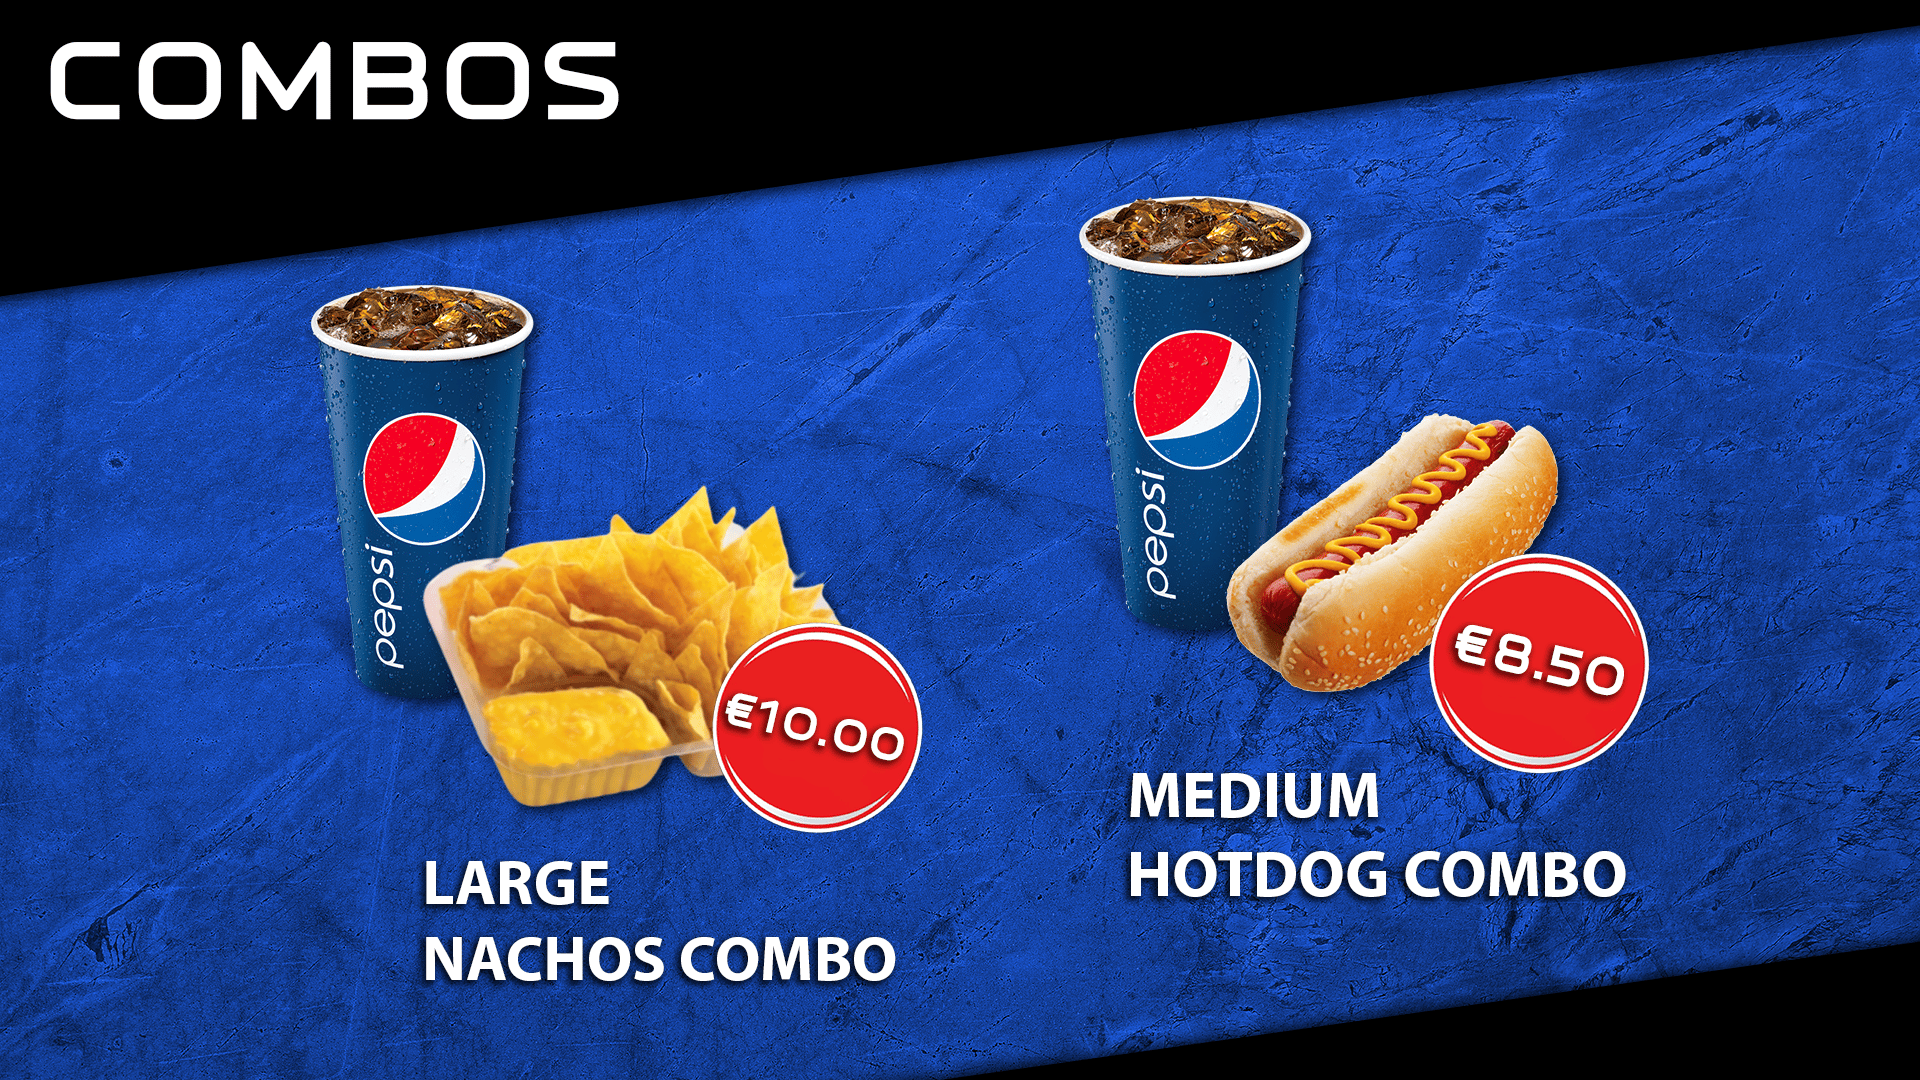 Nacho and Hot Dog Combos